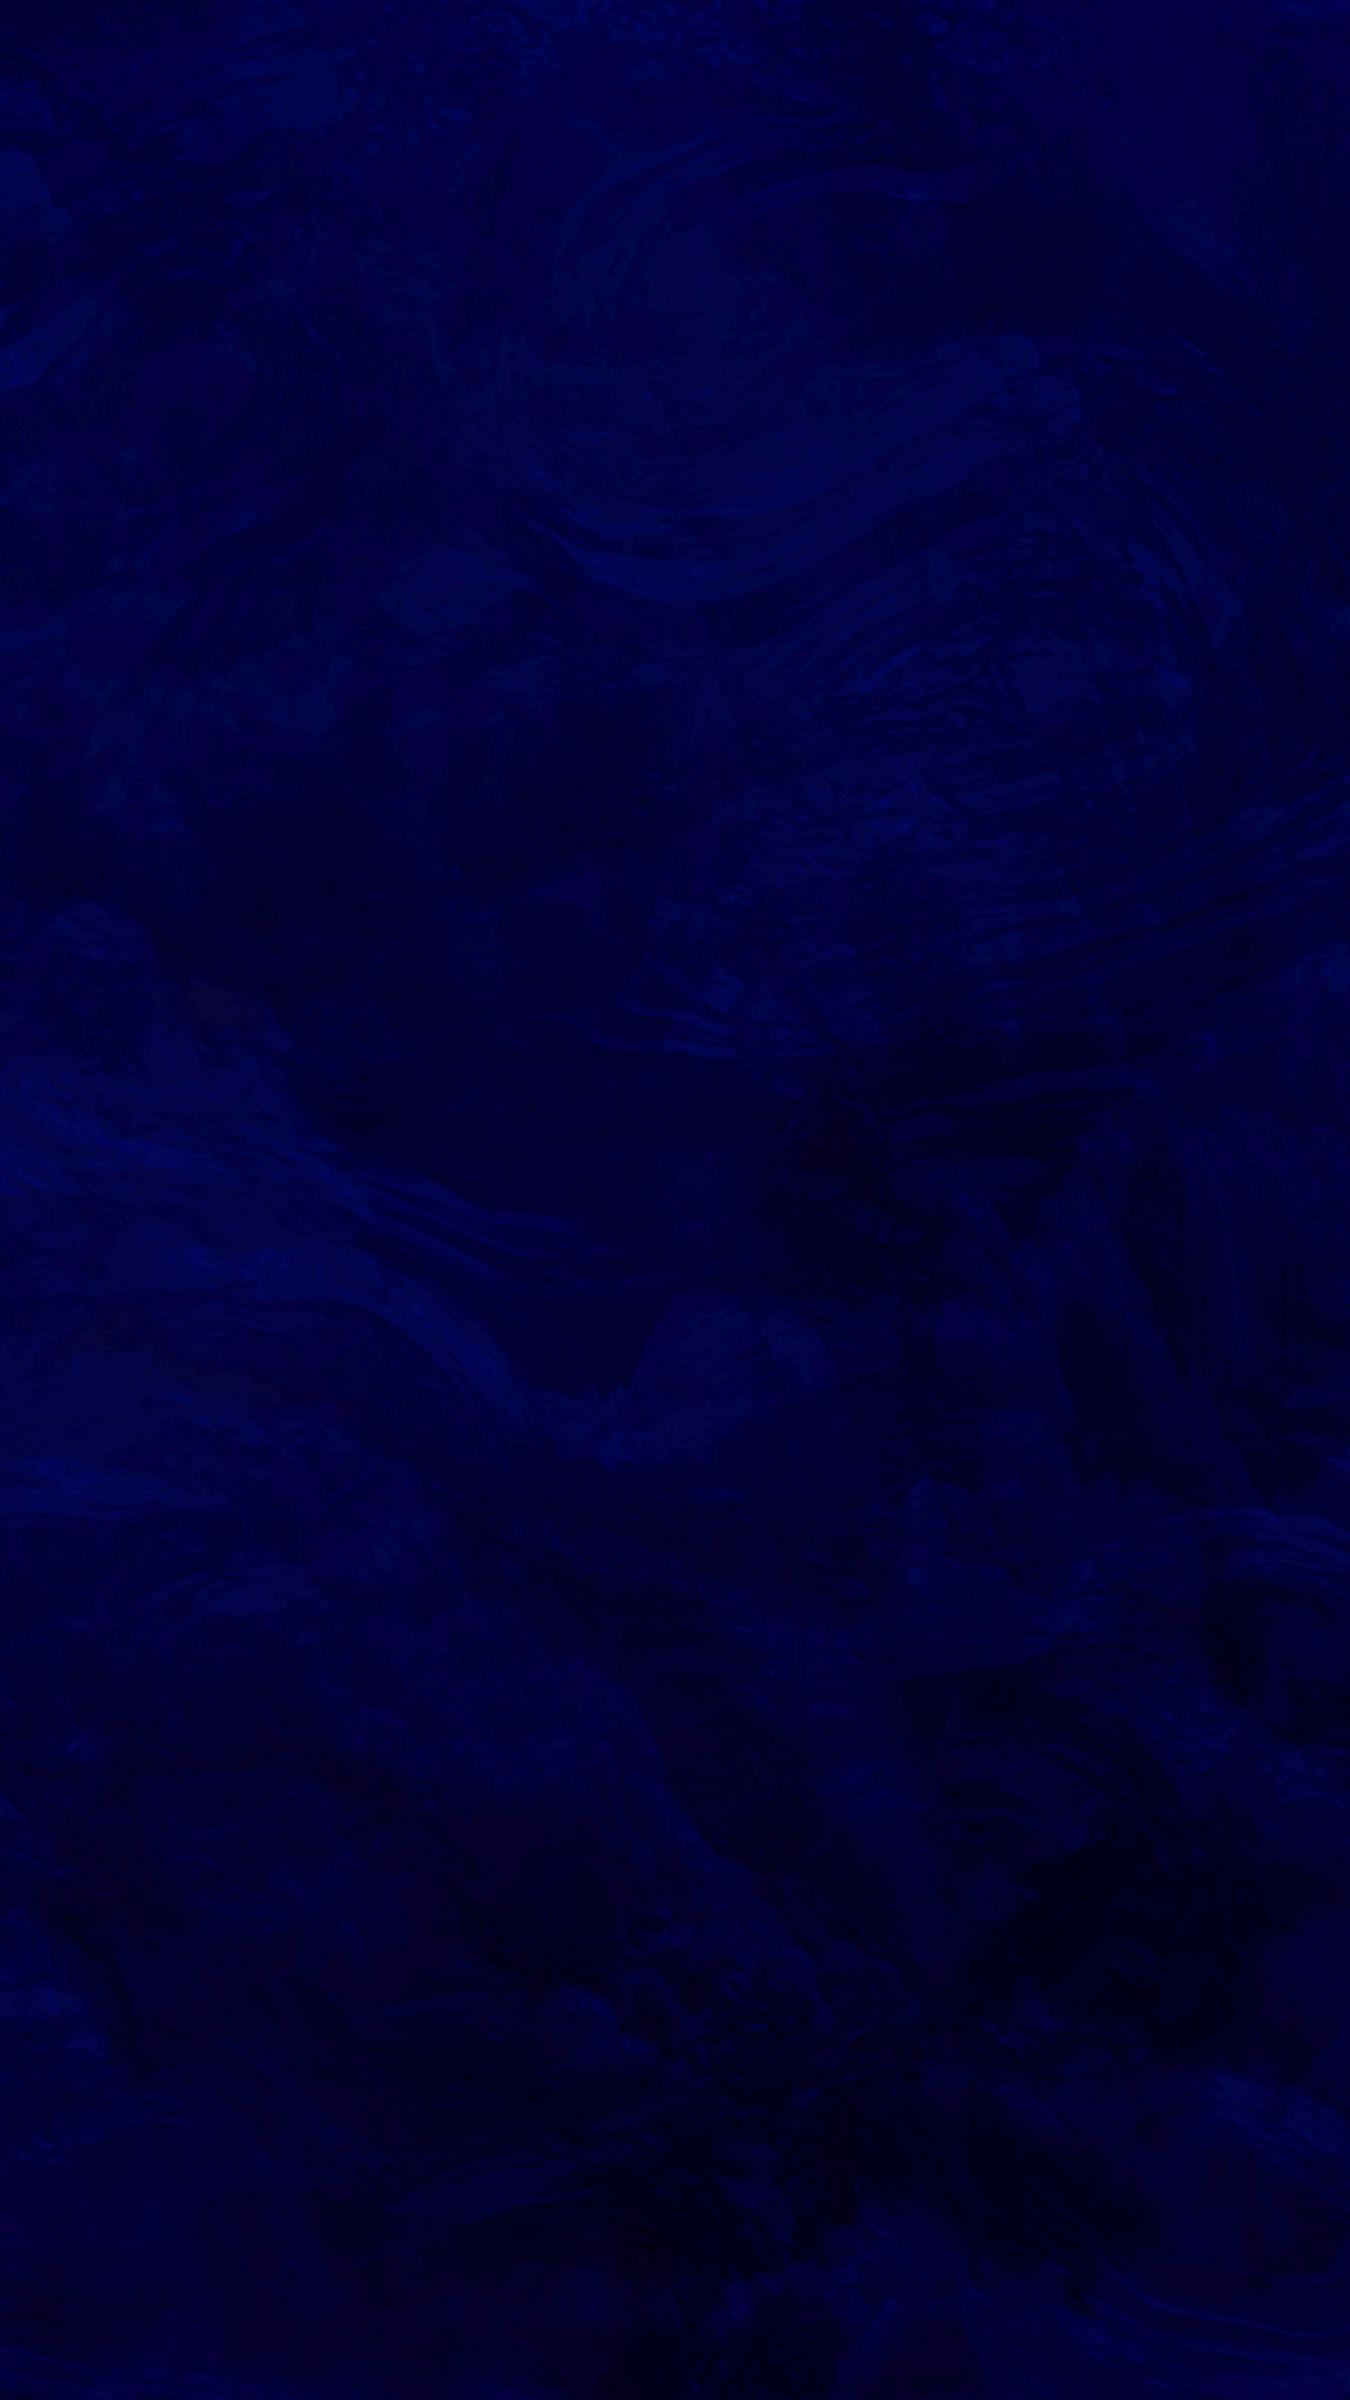 Ocean Waves Dark Blue Wallpapers  iPhone Aesthetic Blue Wallpaper